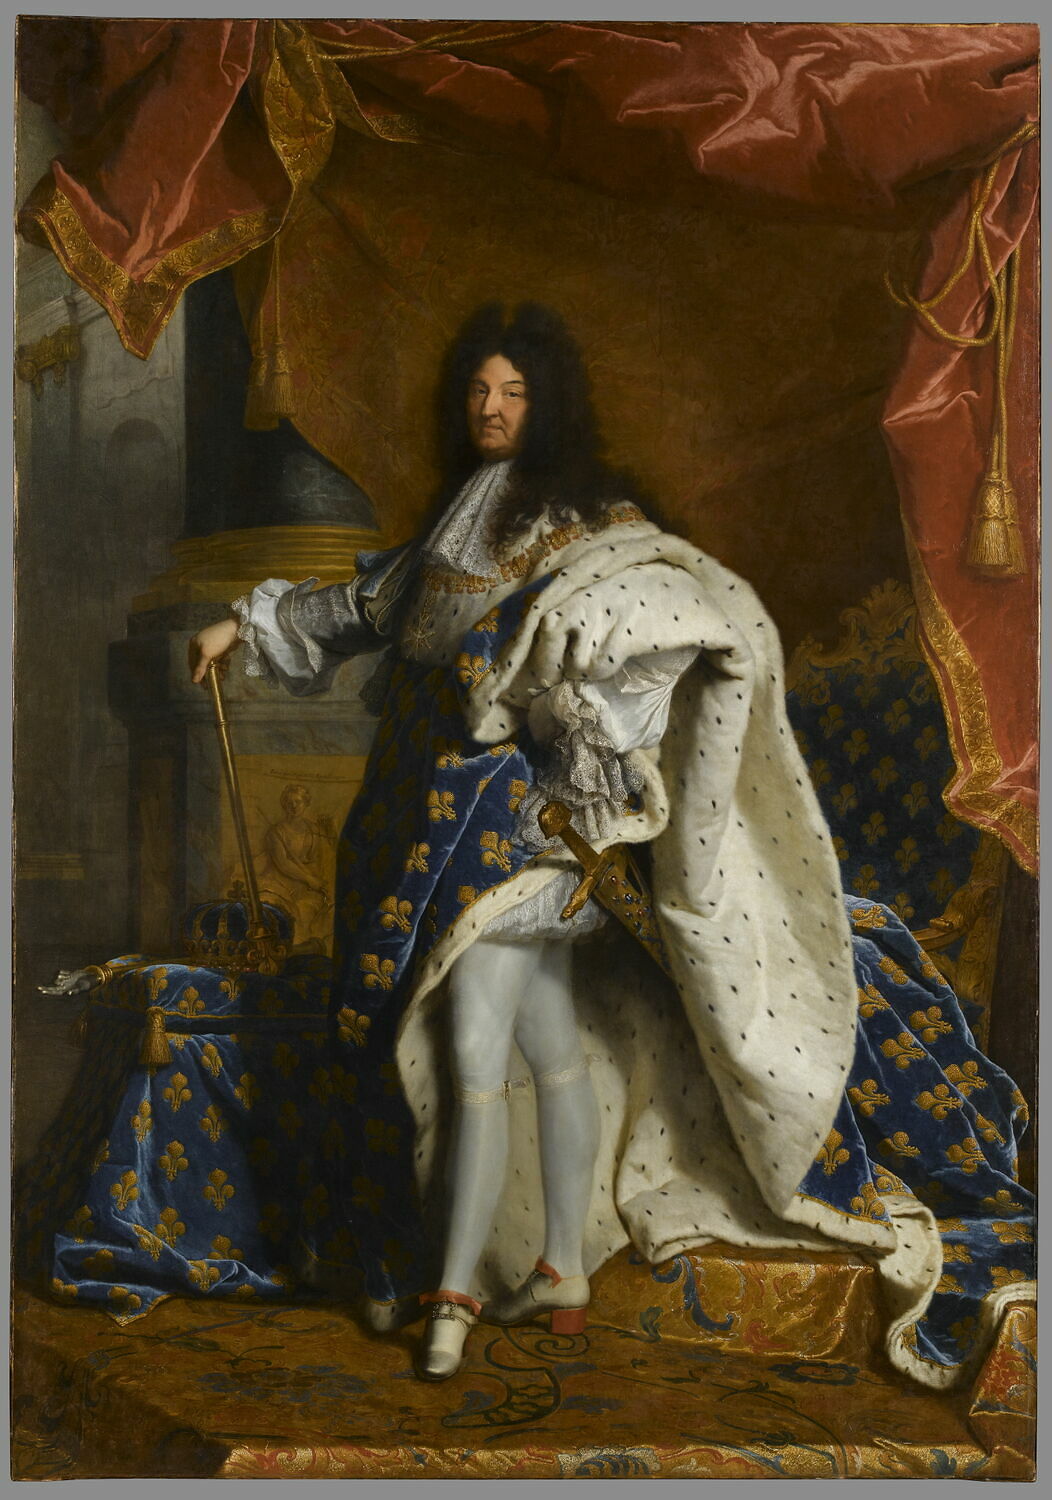 XIV. Louis by Hyacinthe Rigaud - 1701 - 277 × 194 cm Musée du Louvre